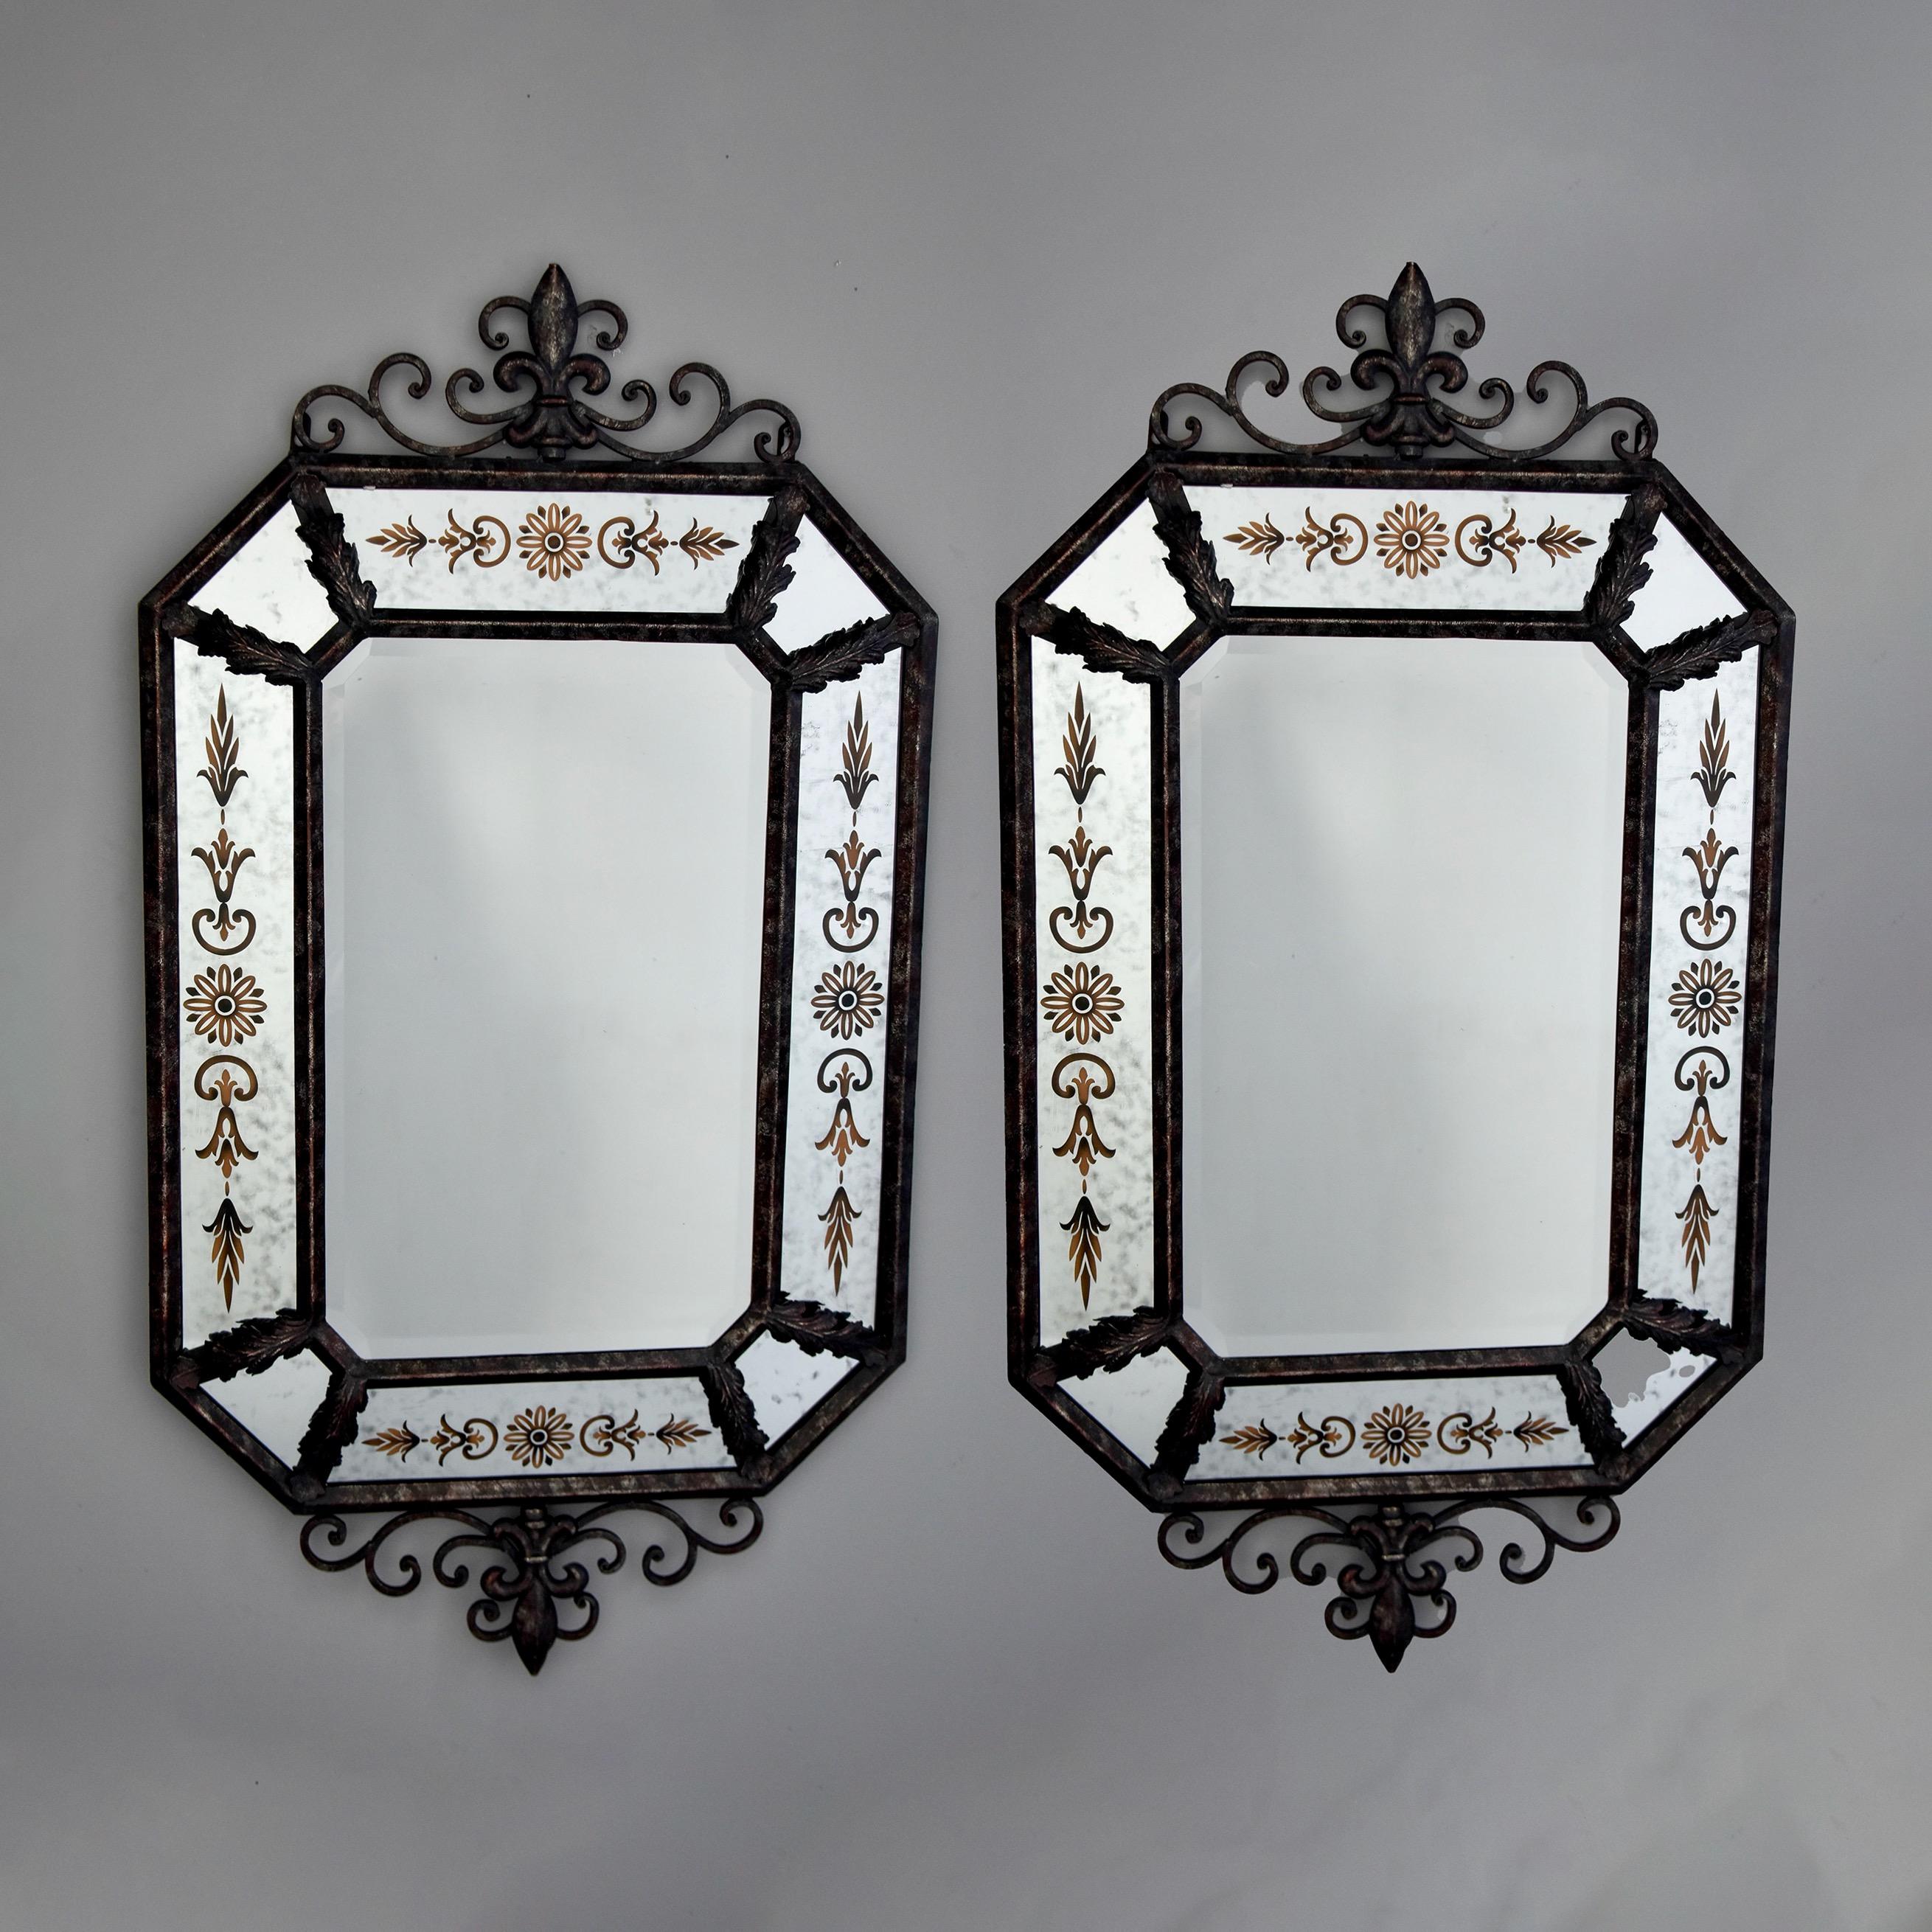 Dieses Paar spanischer Spiegel mit Eisenrahmen stammt aus den 1990er Jahren. Die Spiegel mit dunklem Eisen- und Metallrahmen sind mit verschnörkelten, dekorativen Wappen und Endstücken sowie mit Akanthusblättern verziert. Der äußere Rahmen aus acht